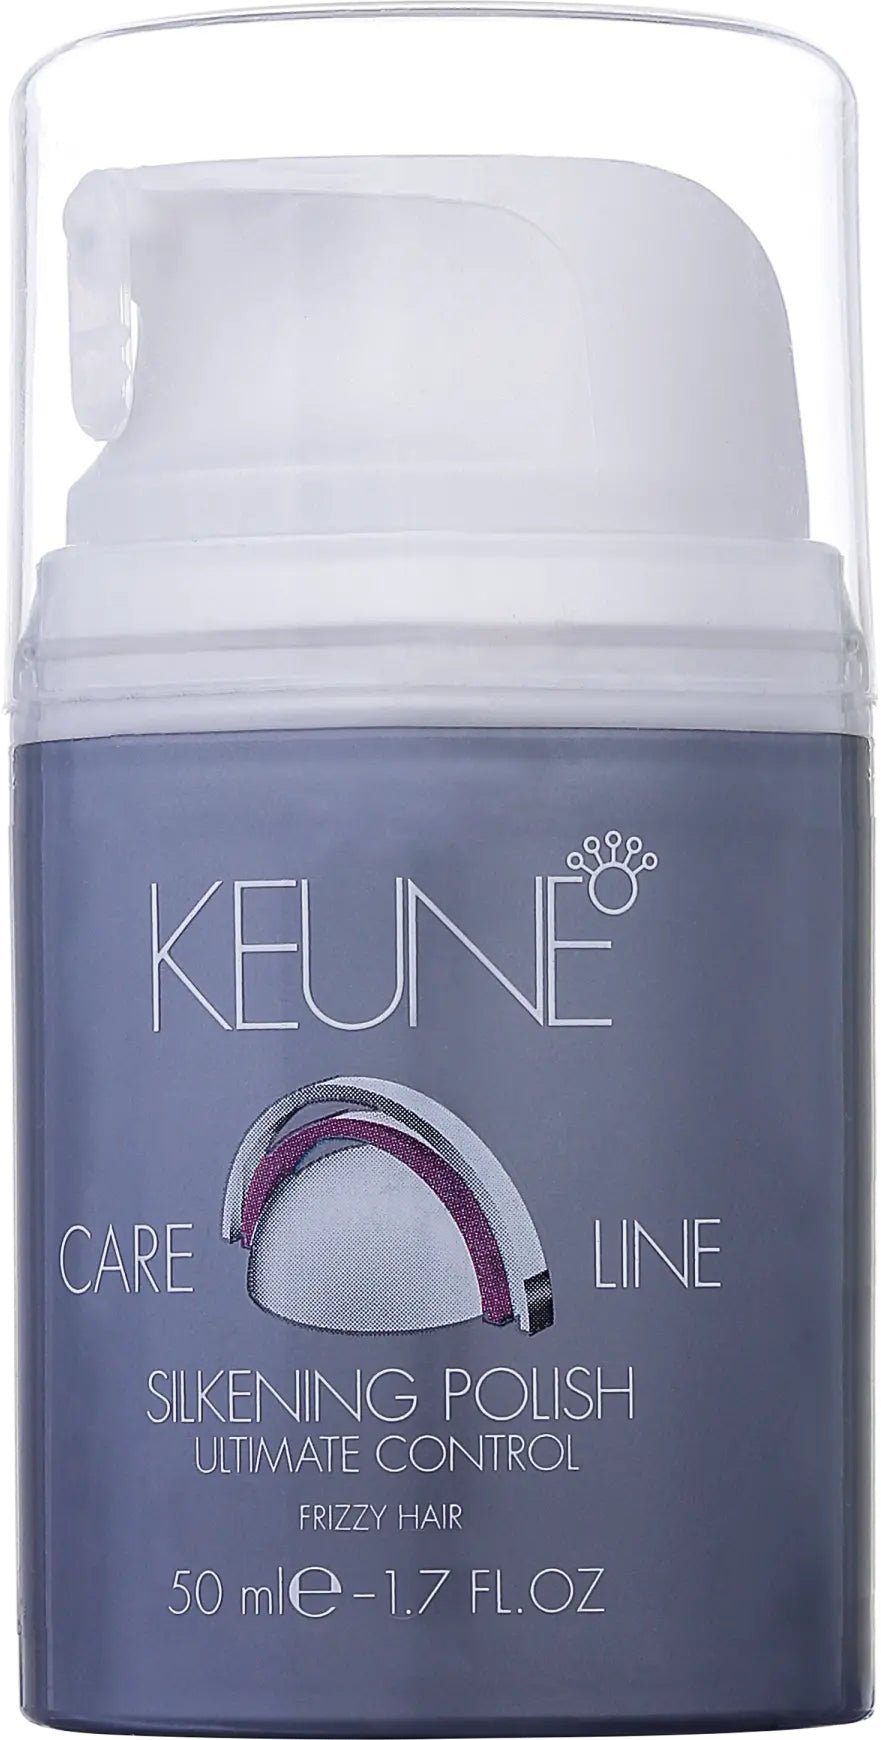 Keune Care Line Ultimate Control Silkening Polish 50Ml - AllurebeautypkKeune Care Line Ultimate Control Silkening Polish 50Ml